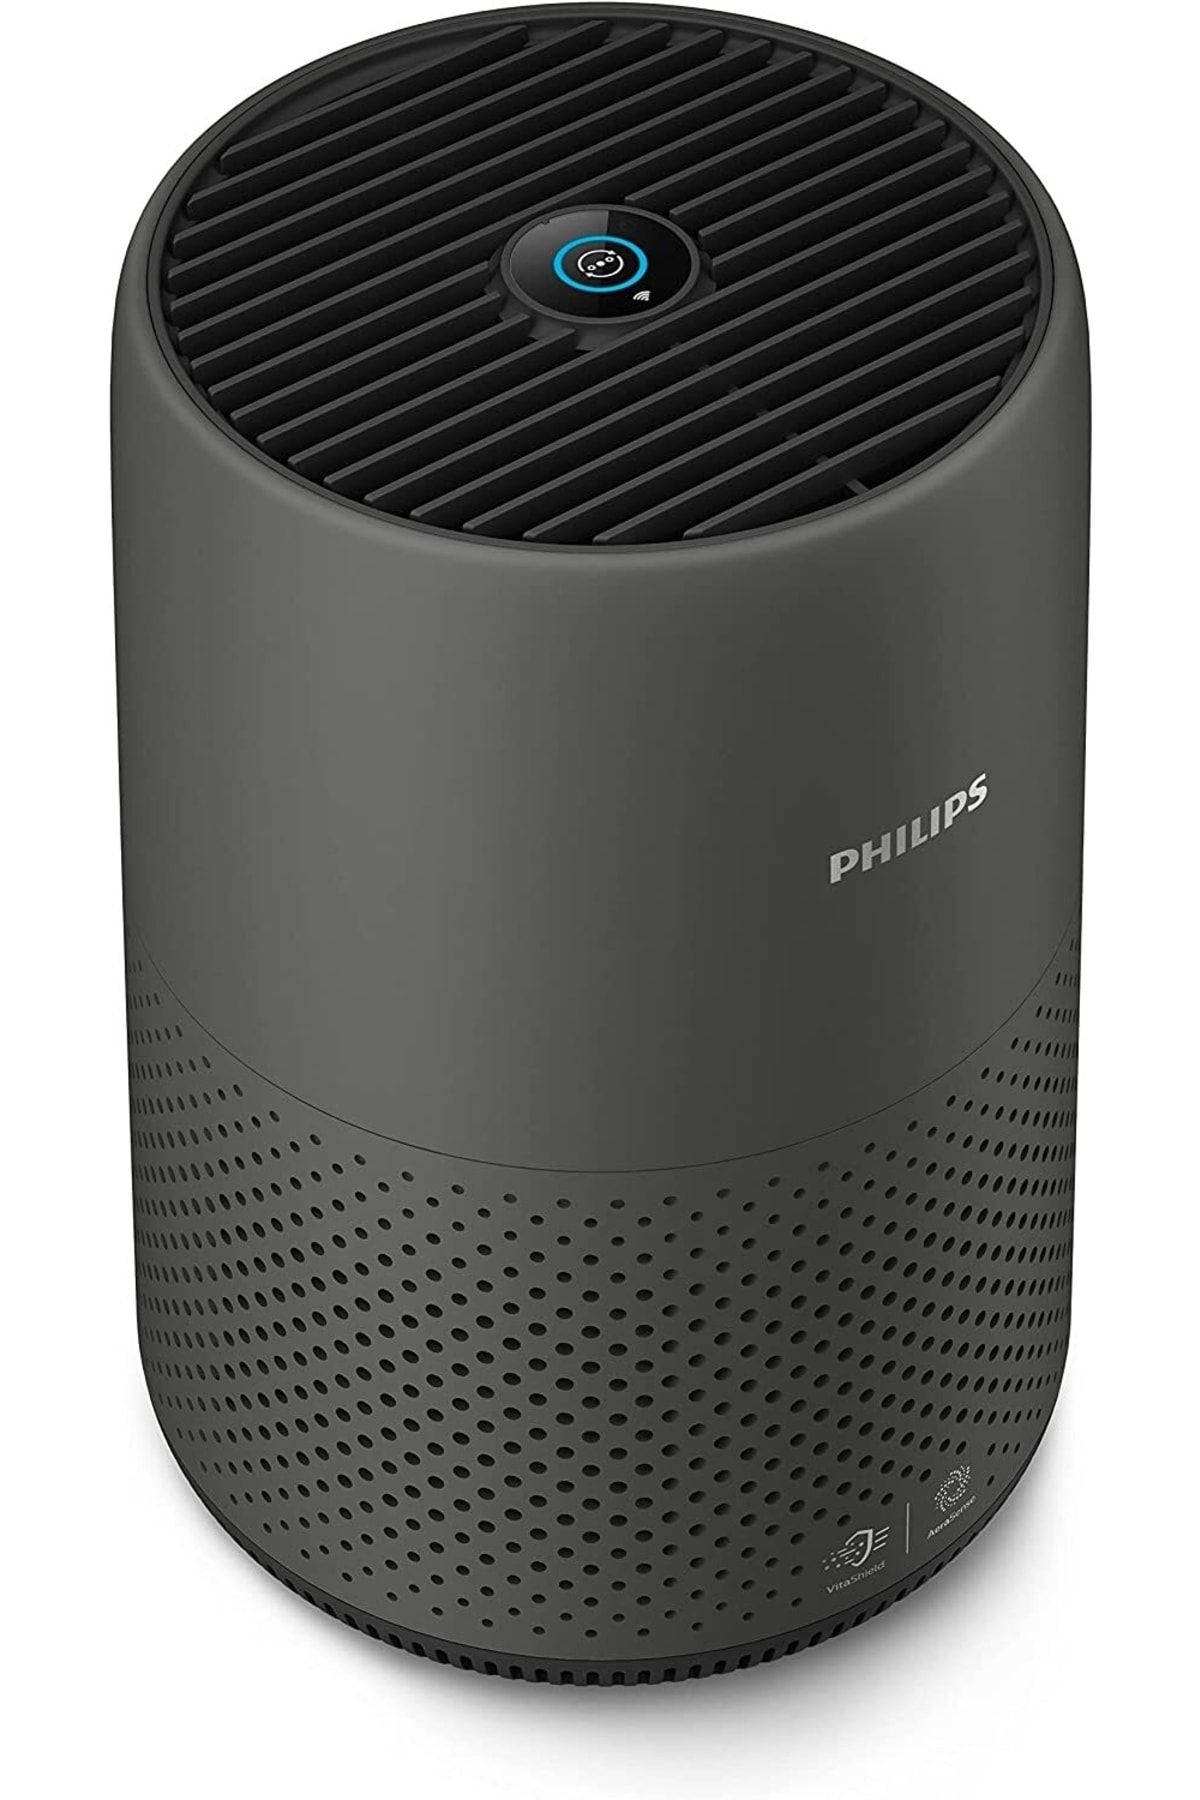 Philips Ac0850 Hava Temizleyici , Füme/siyah , 49 M2